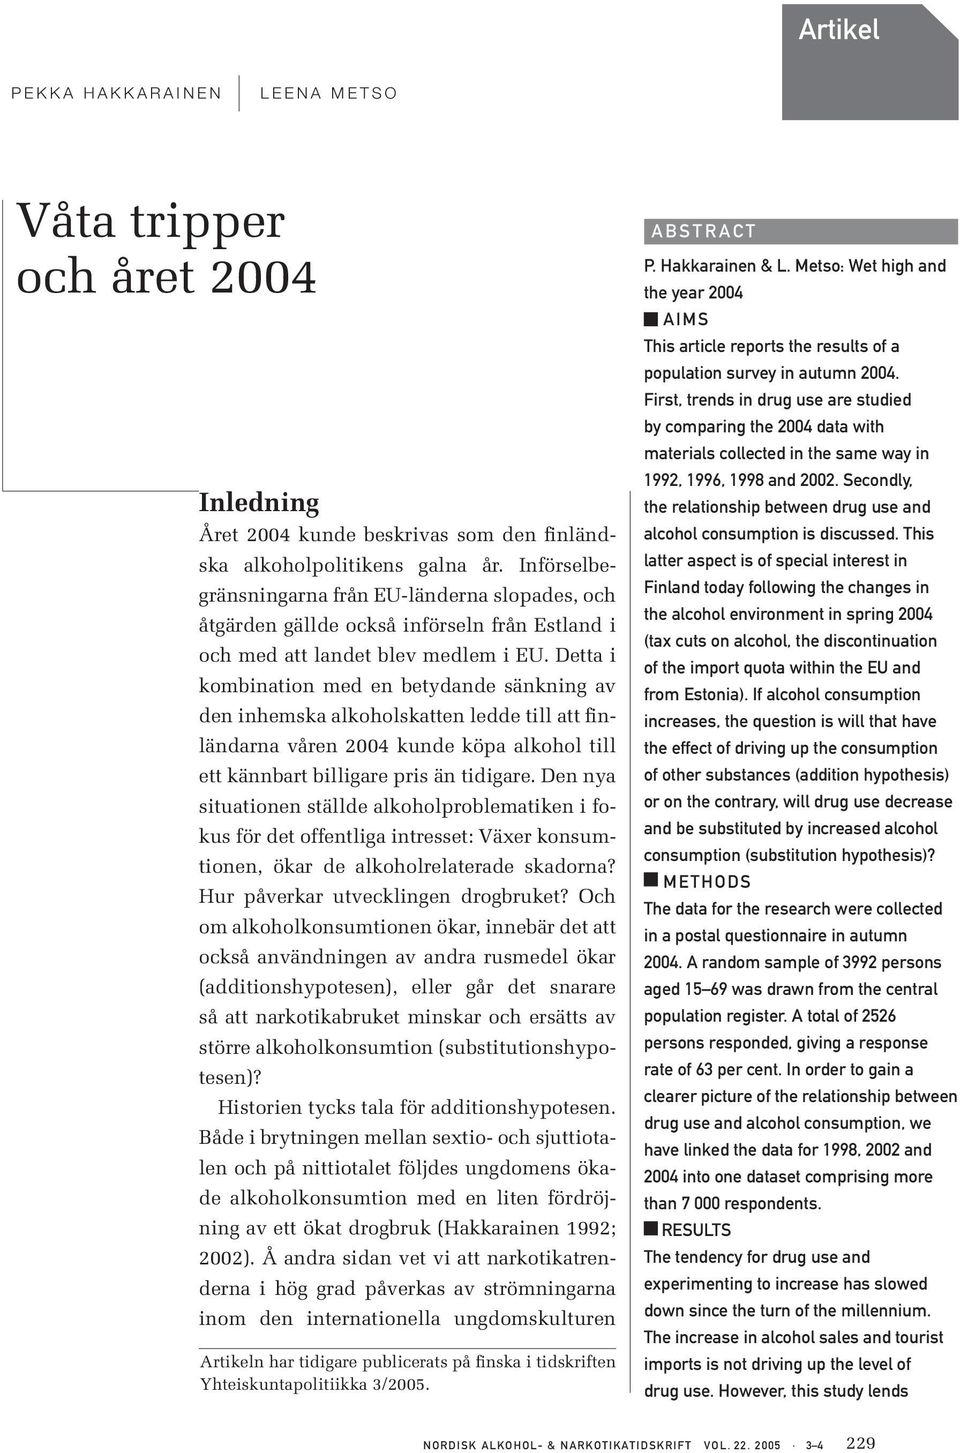 Detta i kombination med en betydande sänkning av den inhemska alkoholskatten ledde till att finländarna våren 2004 kunde köpa alkohol till ett kännbart billigare pris än tidigare.